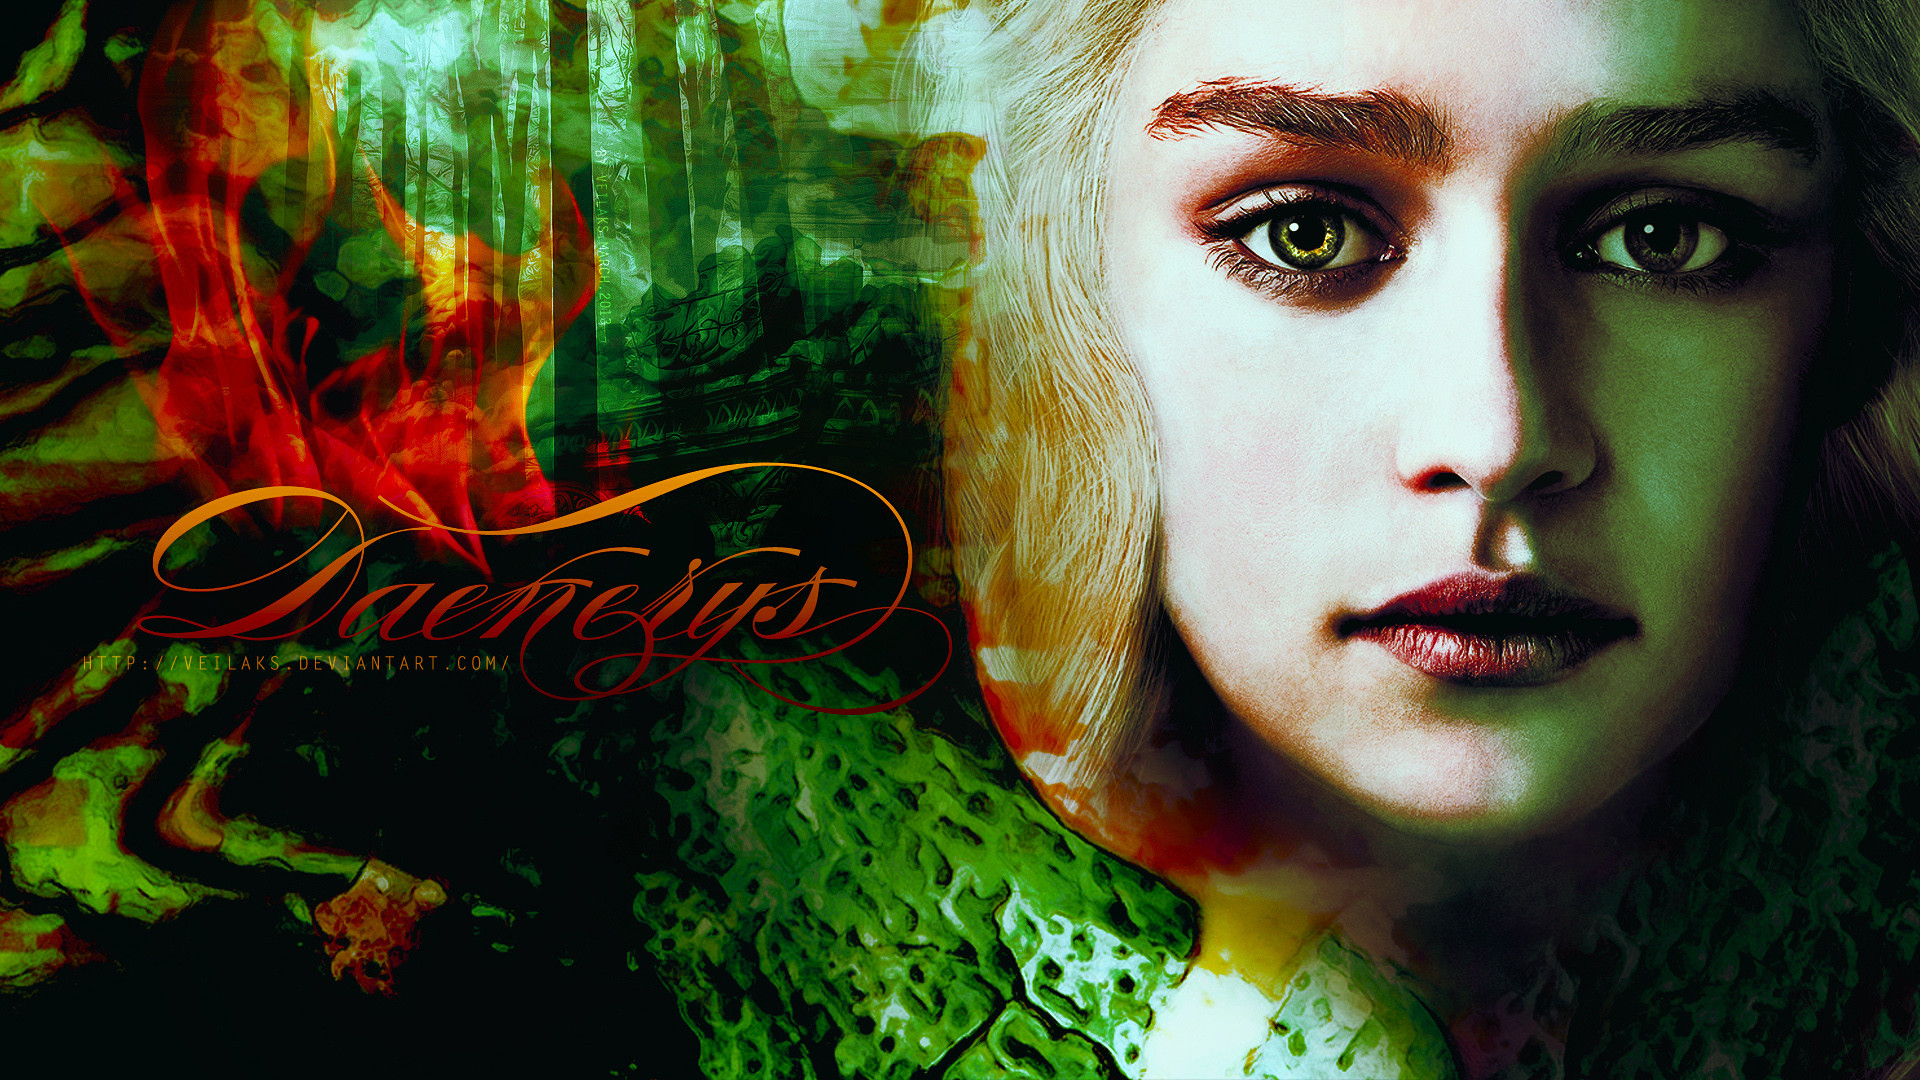 Daenerys Targaryen Wallpapers 69 Images